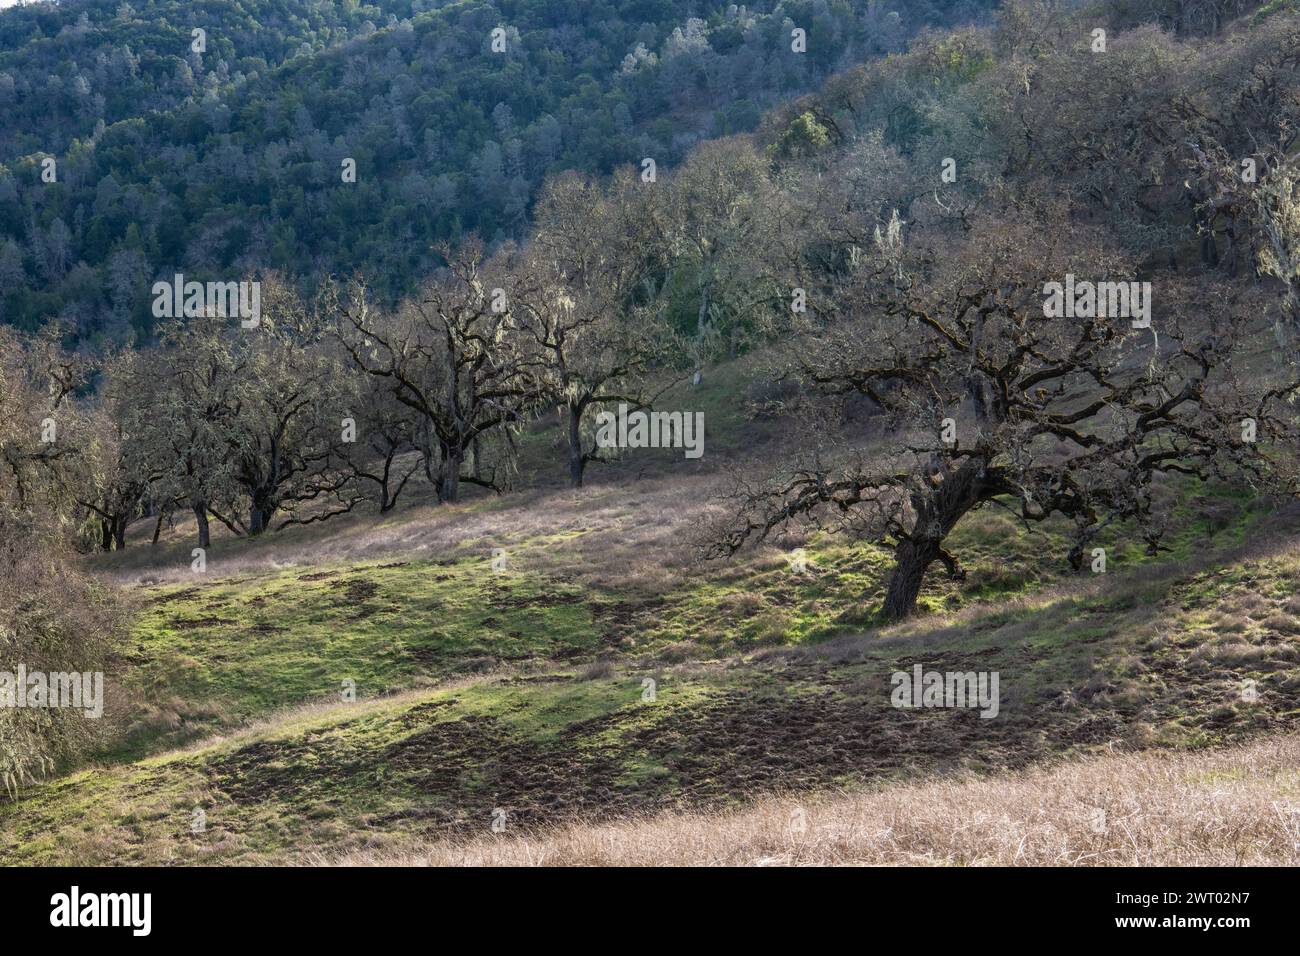 Une colline couverte de savane de chênes et de plusieurs chênes dans le parc d'état Henry W. Coe en Californie, États-Unis, Amérique du Nord. Banque D'Images